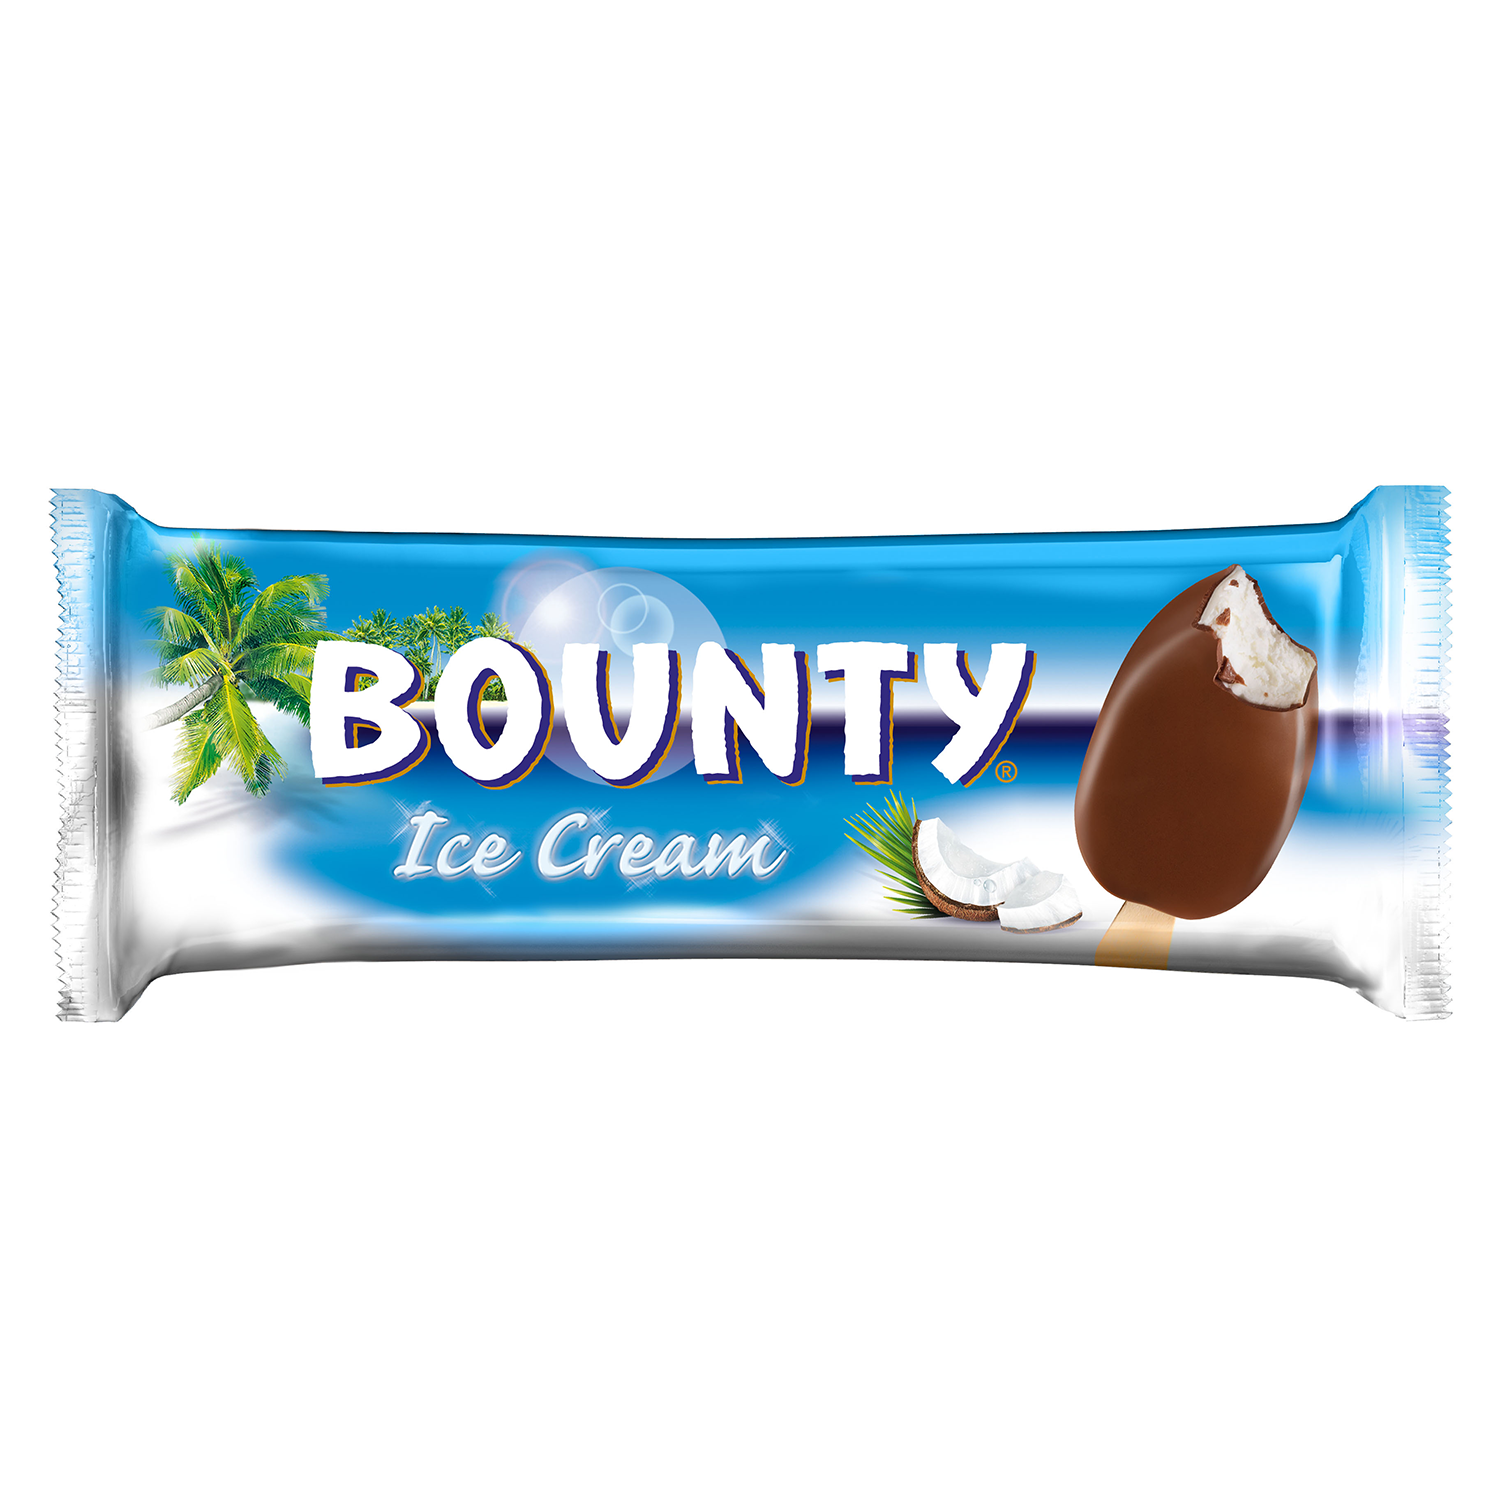 Bounty kid проснулся. Баунти шоколад МАРОЖНИЙ. Мороженое Баунти Ice Cream. Мороженое Bounty батончик. Мороженое Баунти ведро.